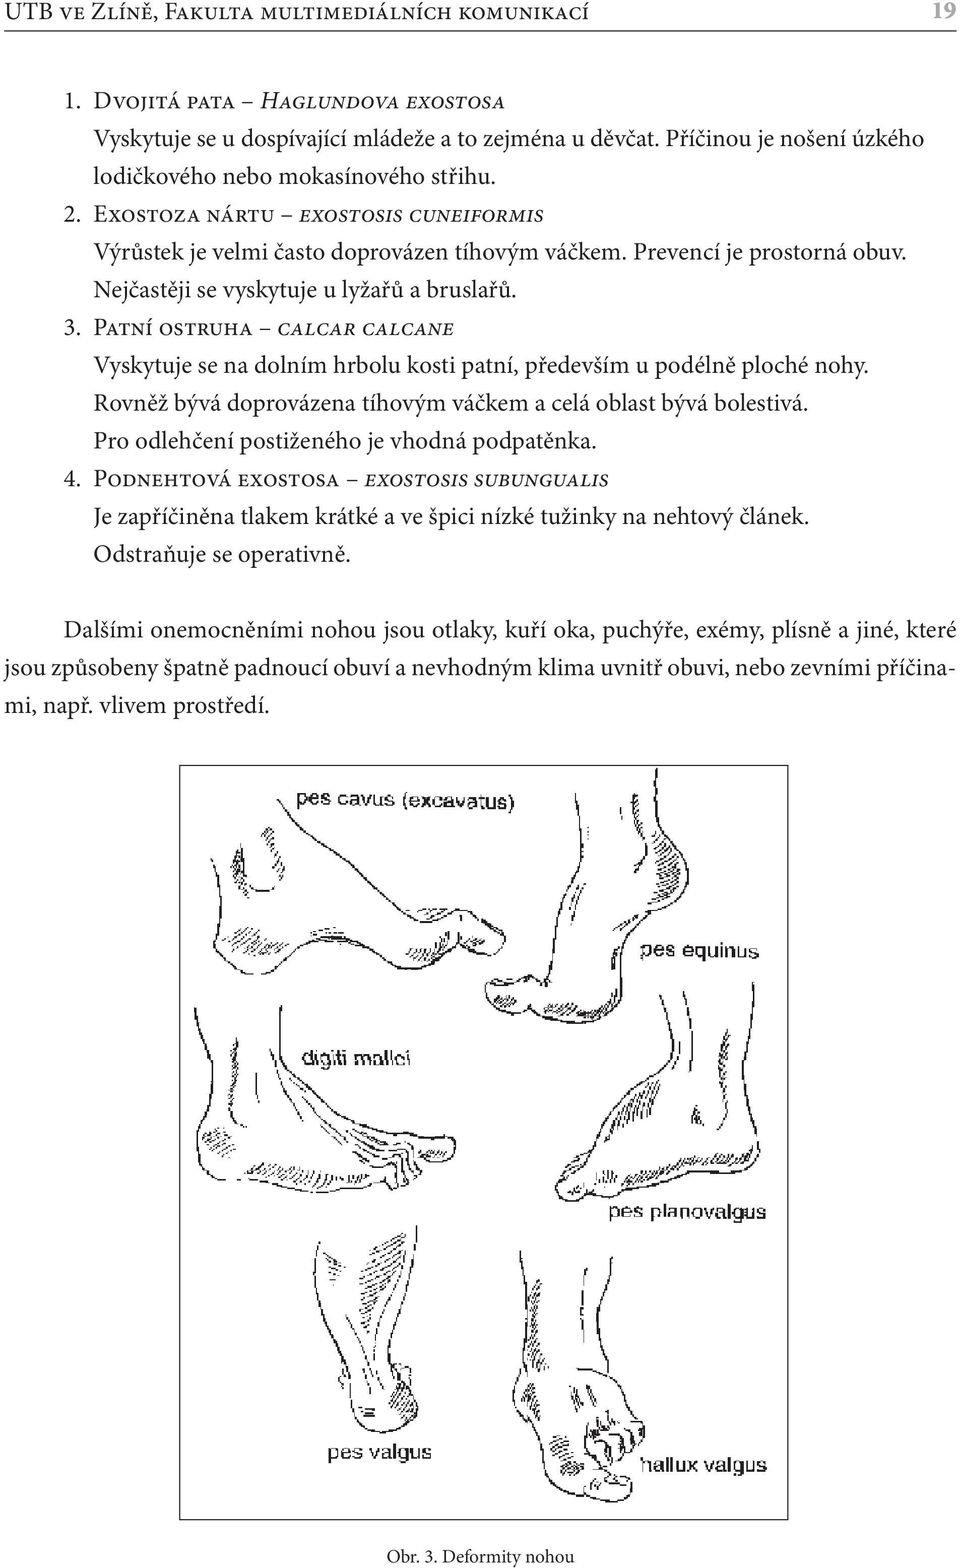 Nejčastěji se vyskytuje u lyžařů a bruslařů. 3. Patní ostruha calcar calcane Vyskytuje se na dolním hrbolu kosti patní, především u podélně ploché nohy.